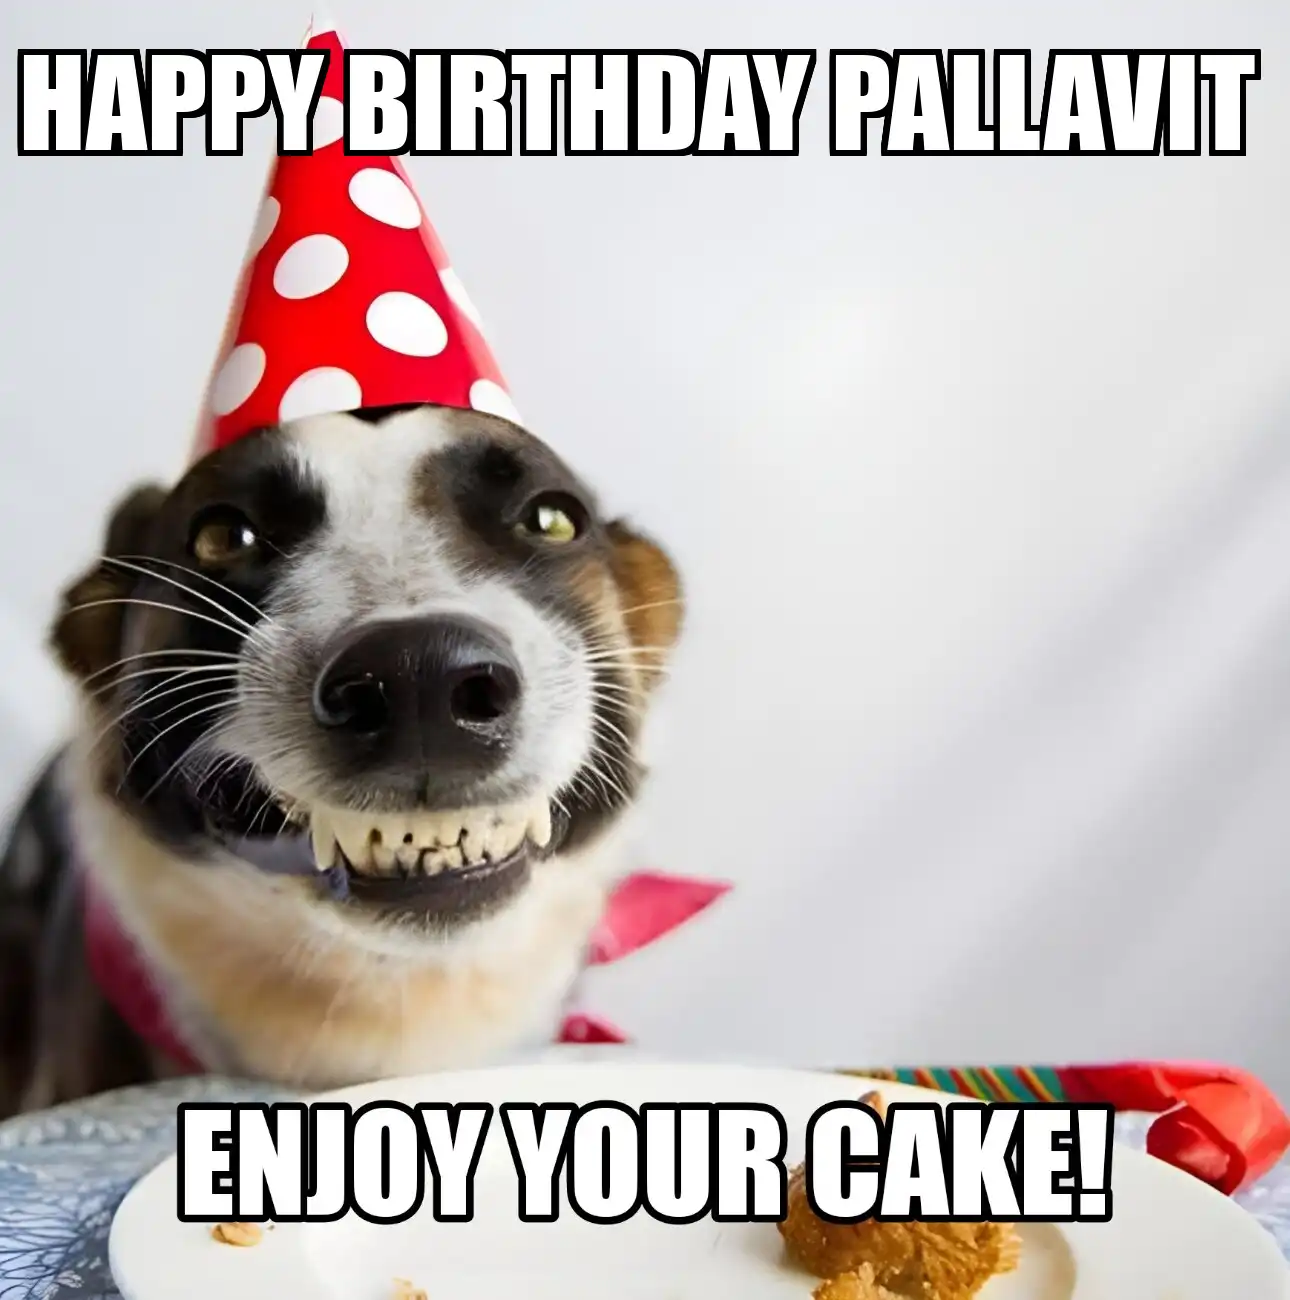 Happy Birthday Pallavit Enjoy Your Cake Dog Meme